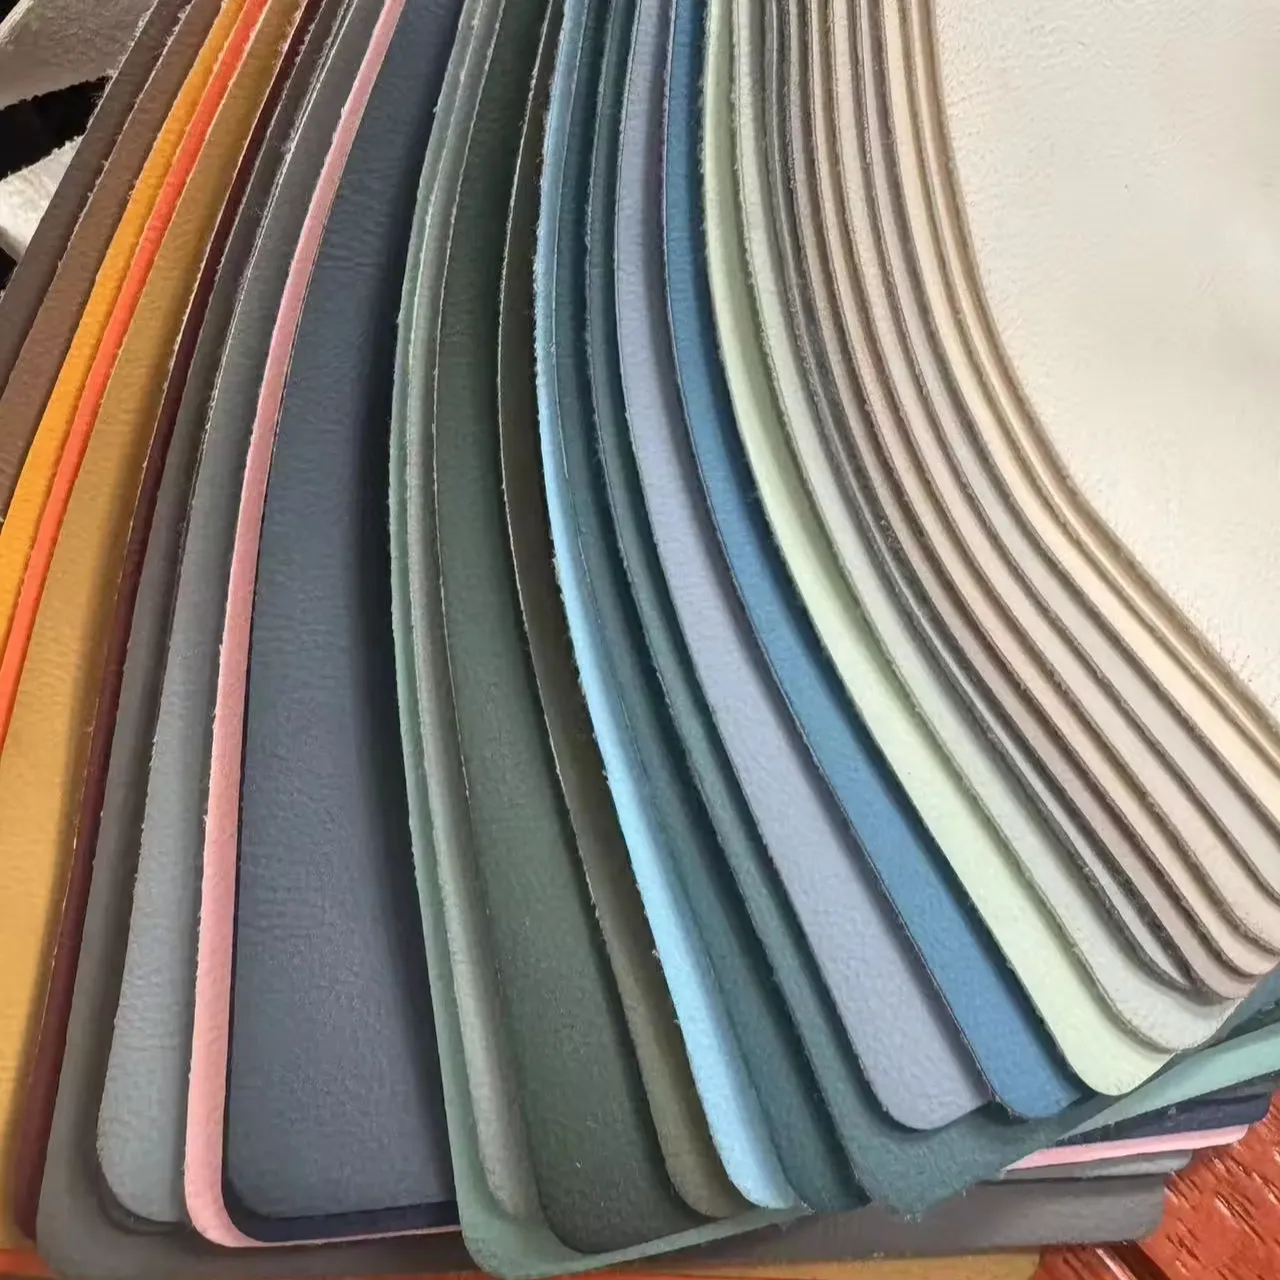 سلسلة MLBD من القماش المخملي بقاعدة مخملية من الخوخ والجلد من البلاستيك بسمك 0.9 ملم متوفر بمخزون من 33 لونًا من اختيارك